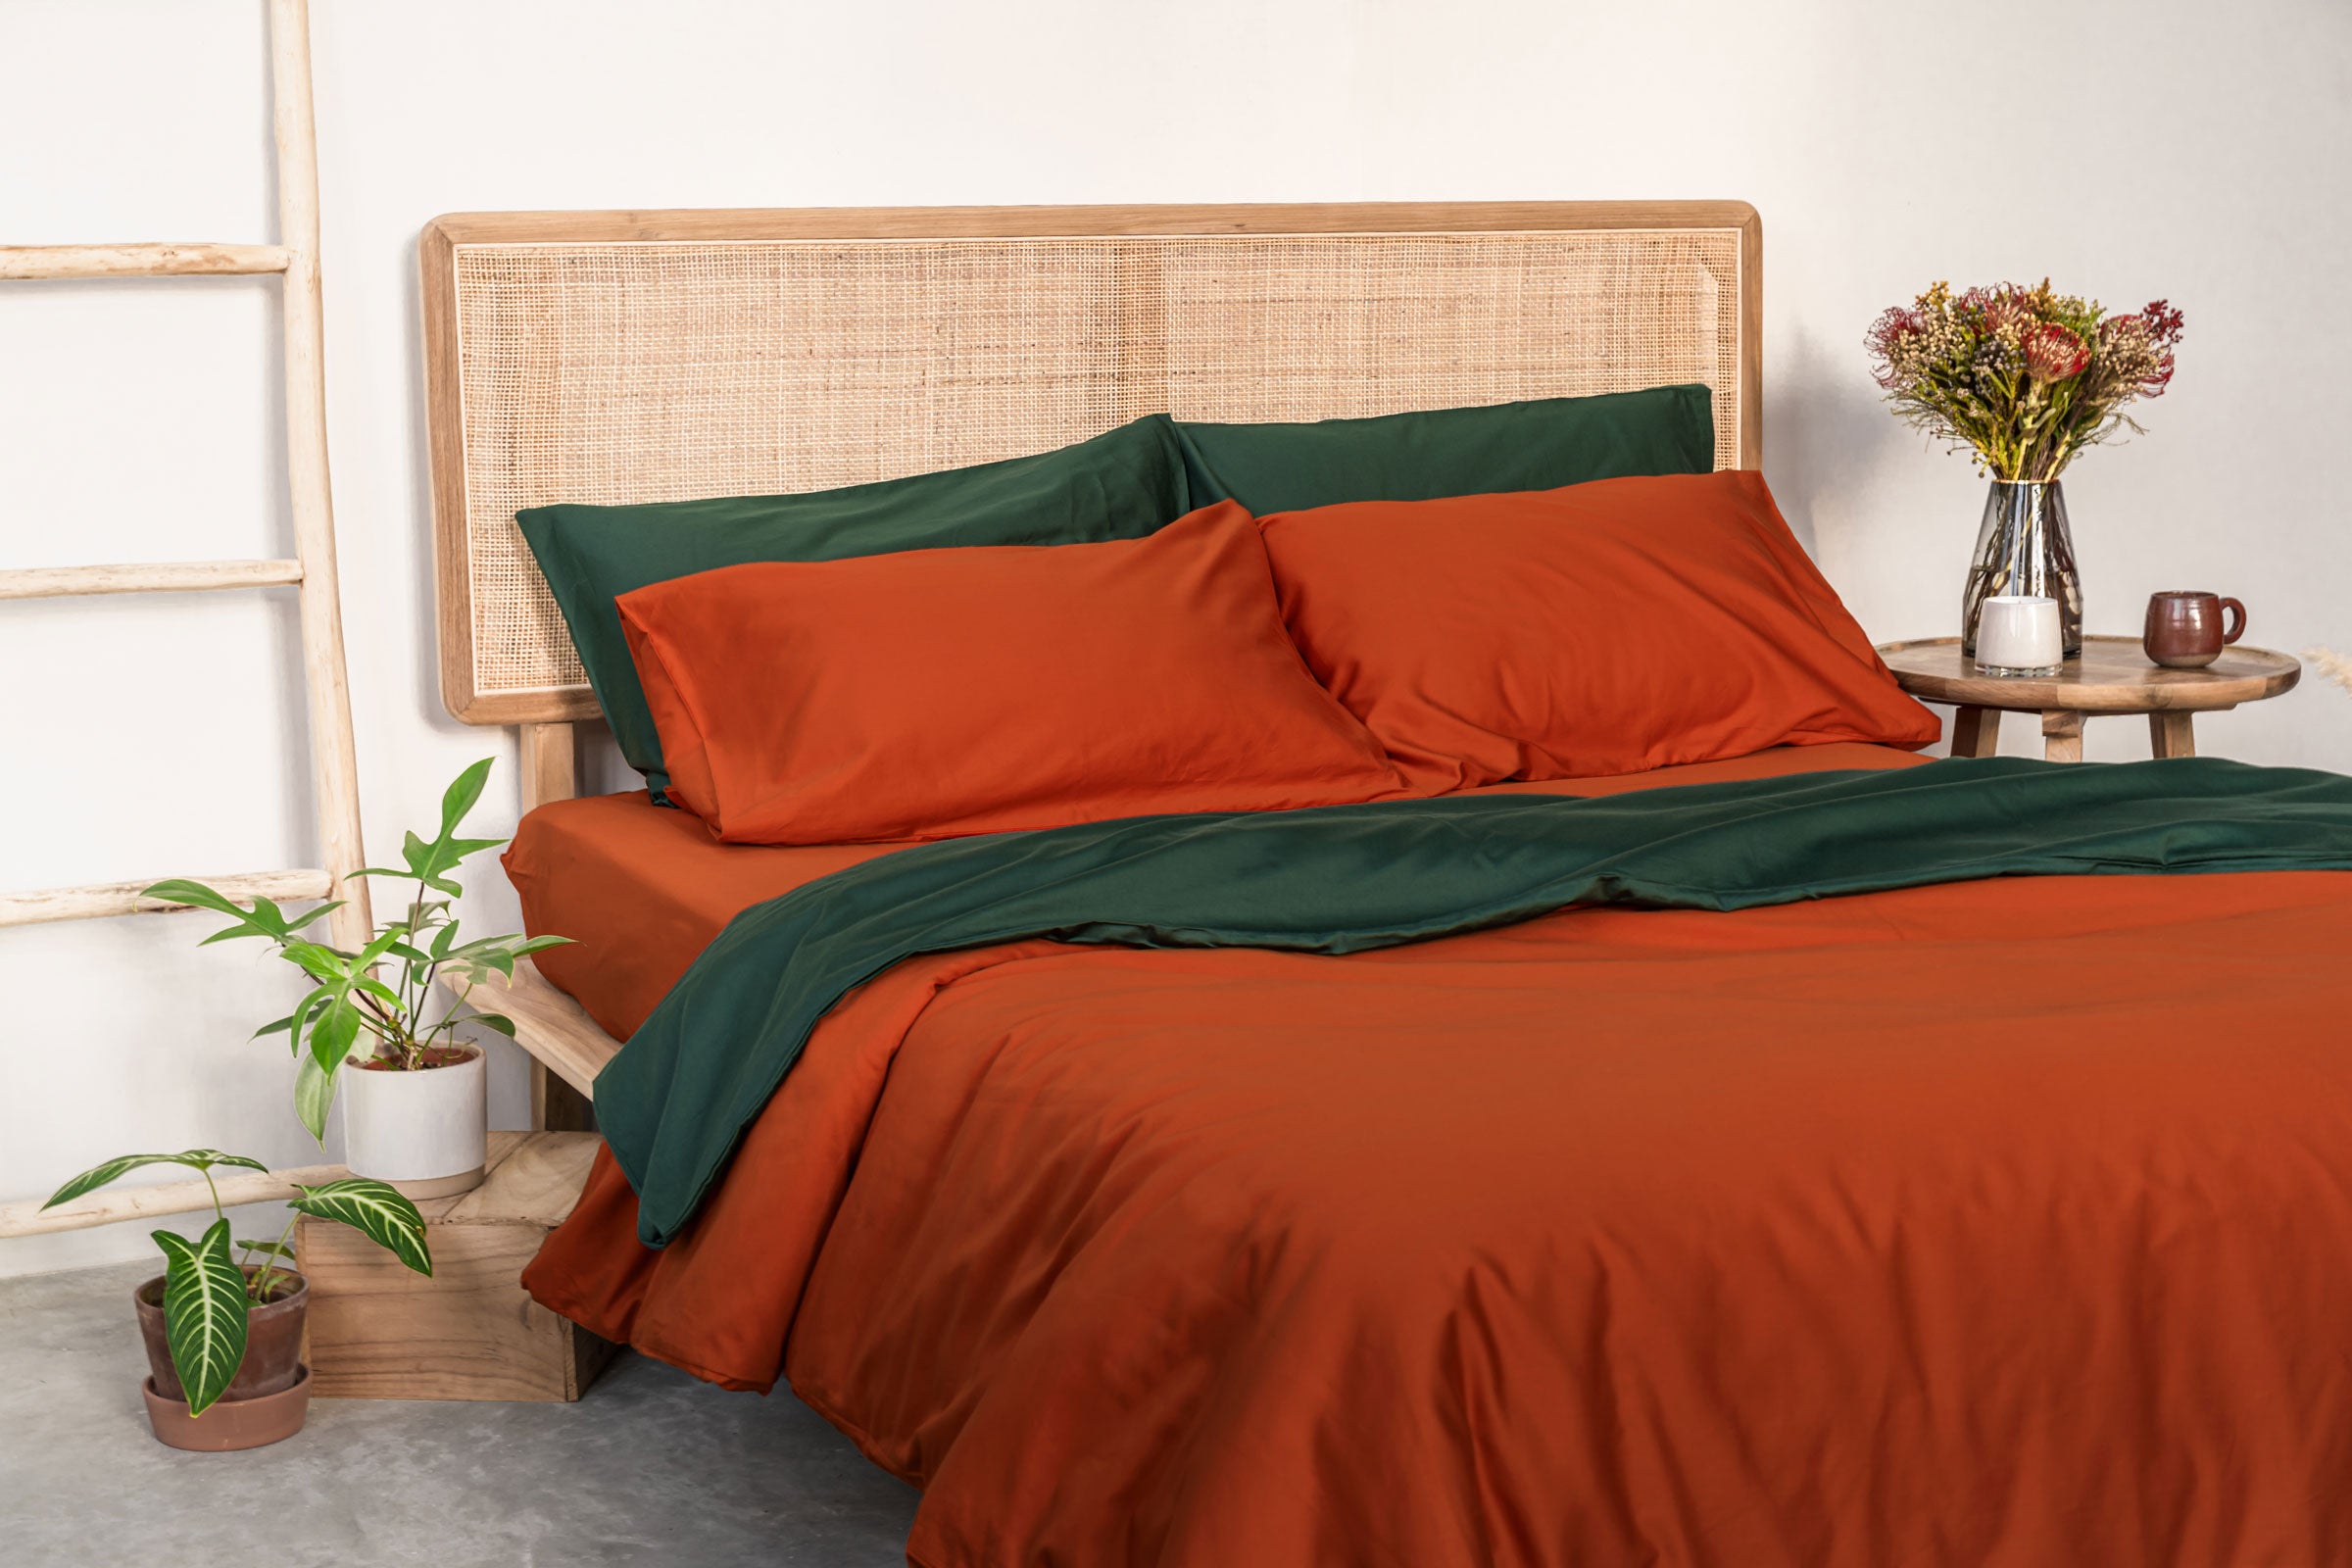 classic-forest-flat-sheet-pillowcase-pair-autumn-fitted-sheet-duvet-cover-pillowcase-pair-by-sojao.jpg